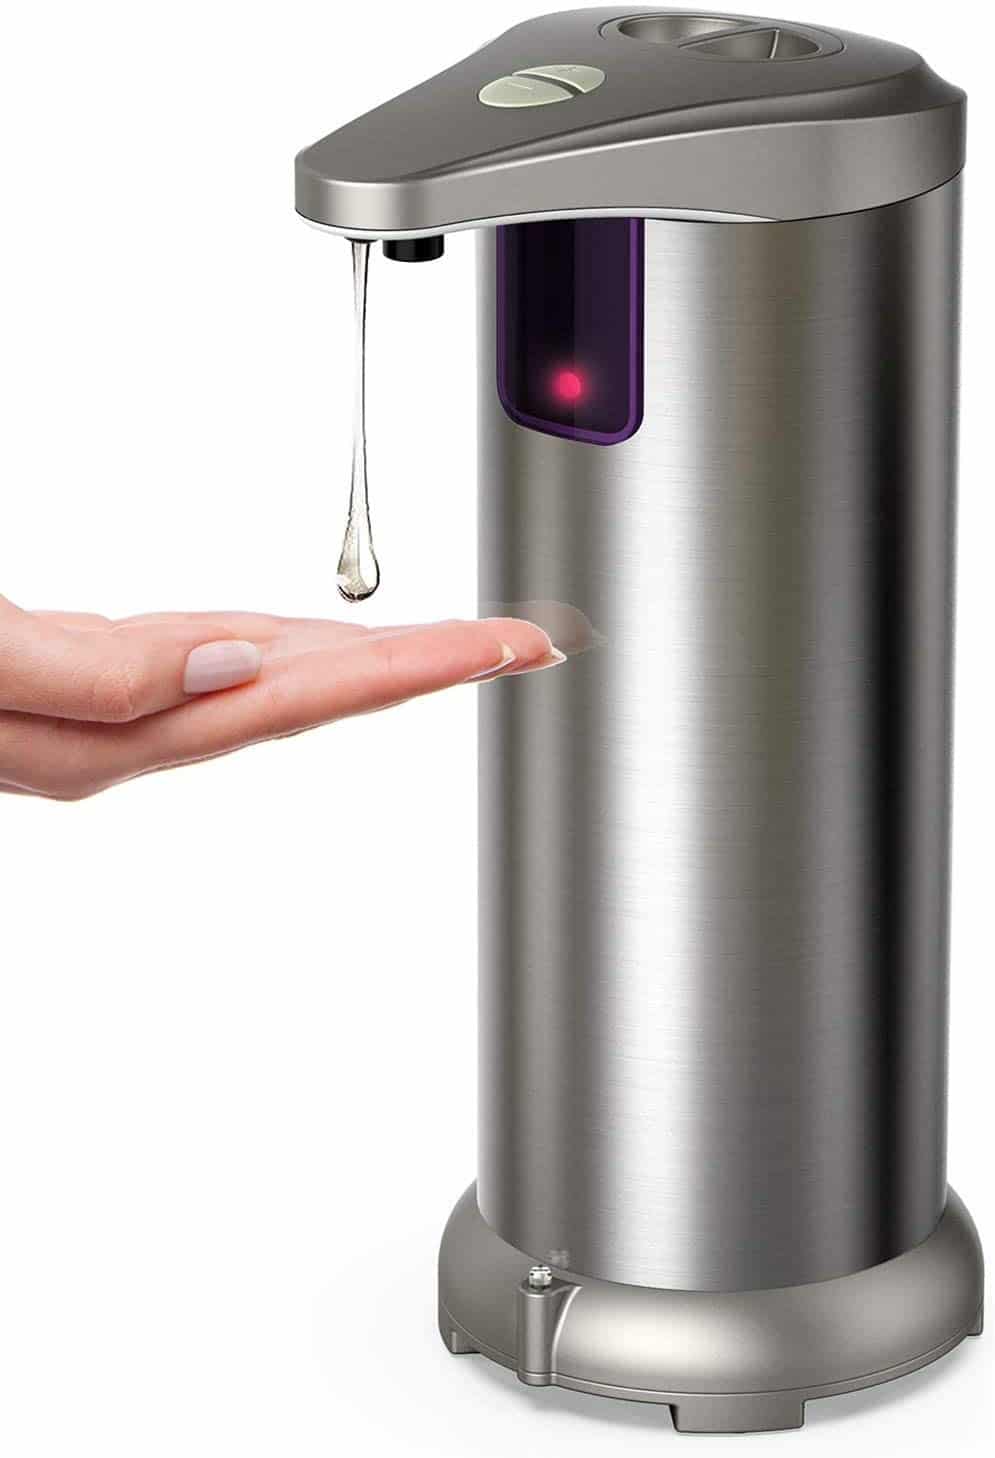 Averest Electric Soap Dispenser